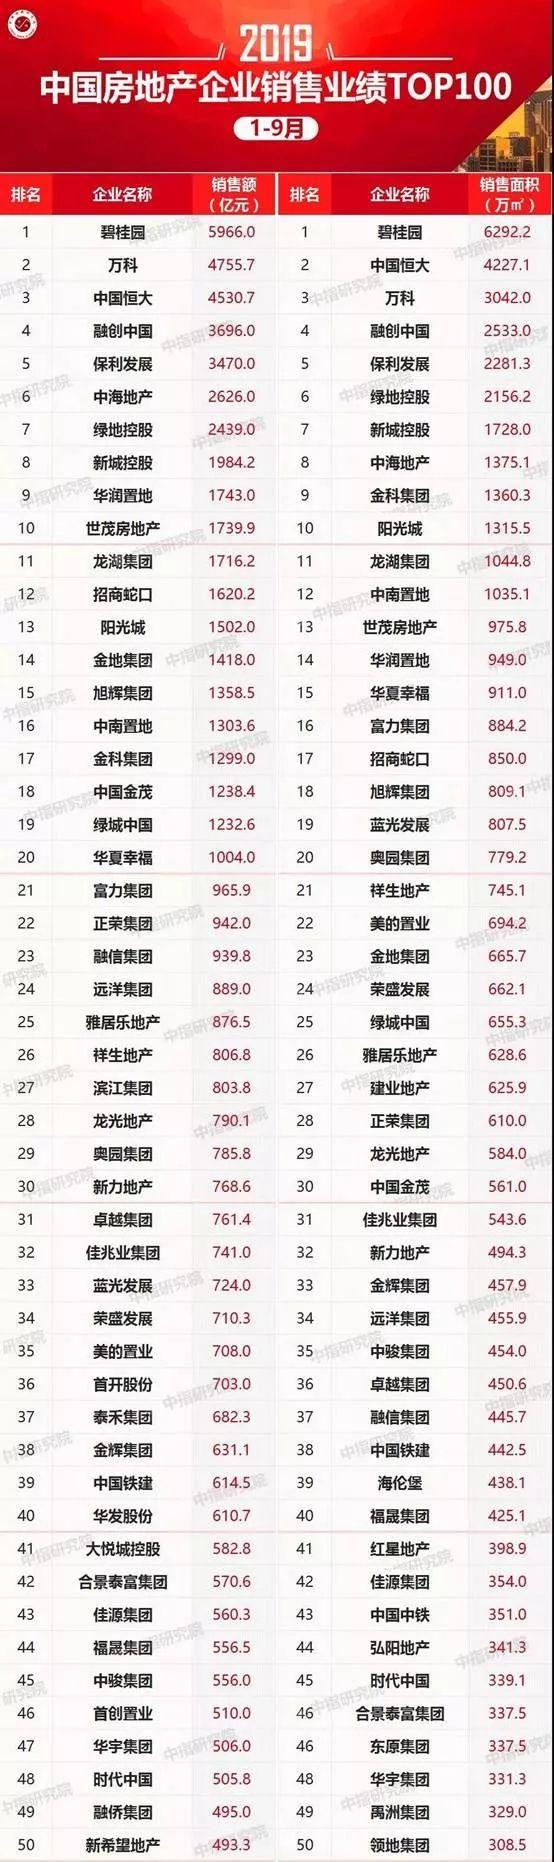 9月二手房成交跌至6098套 前三季度杭州卖地2239亿元